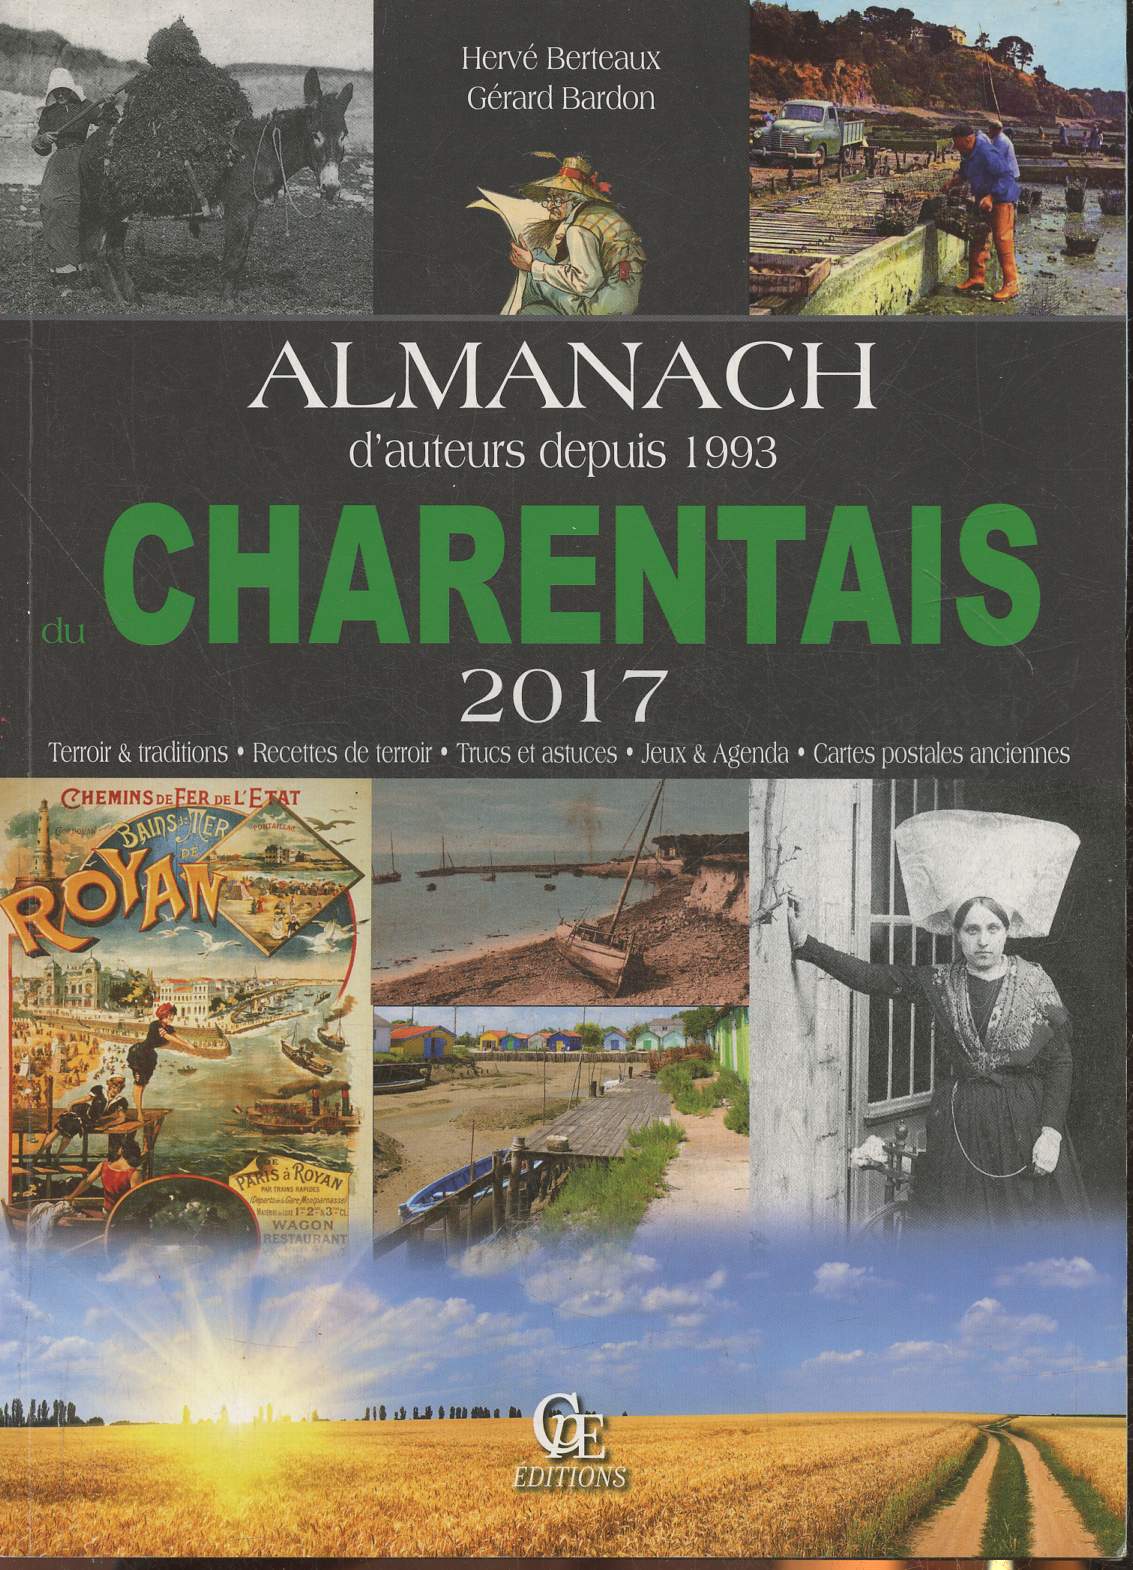 Almanach d'auteurs depuis 1993 du Charentais 2017